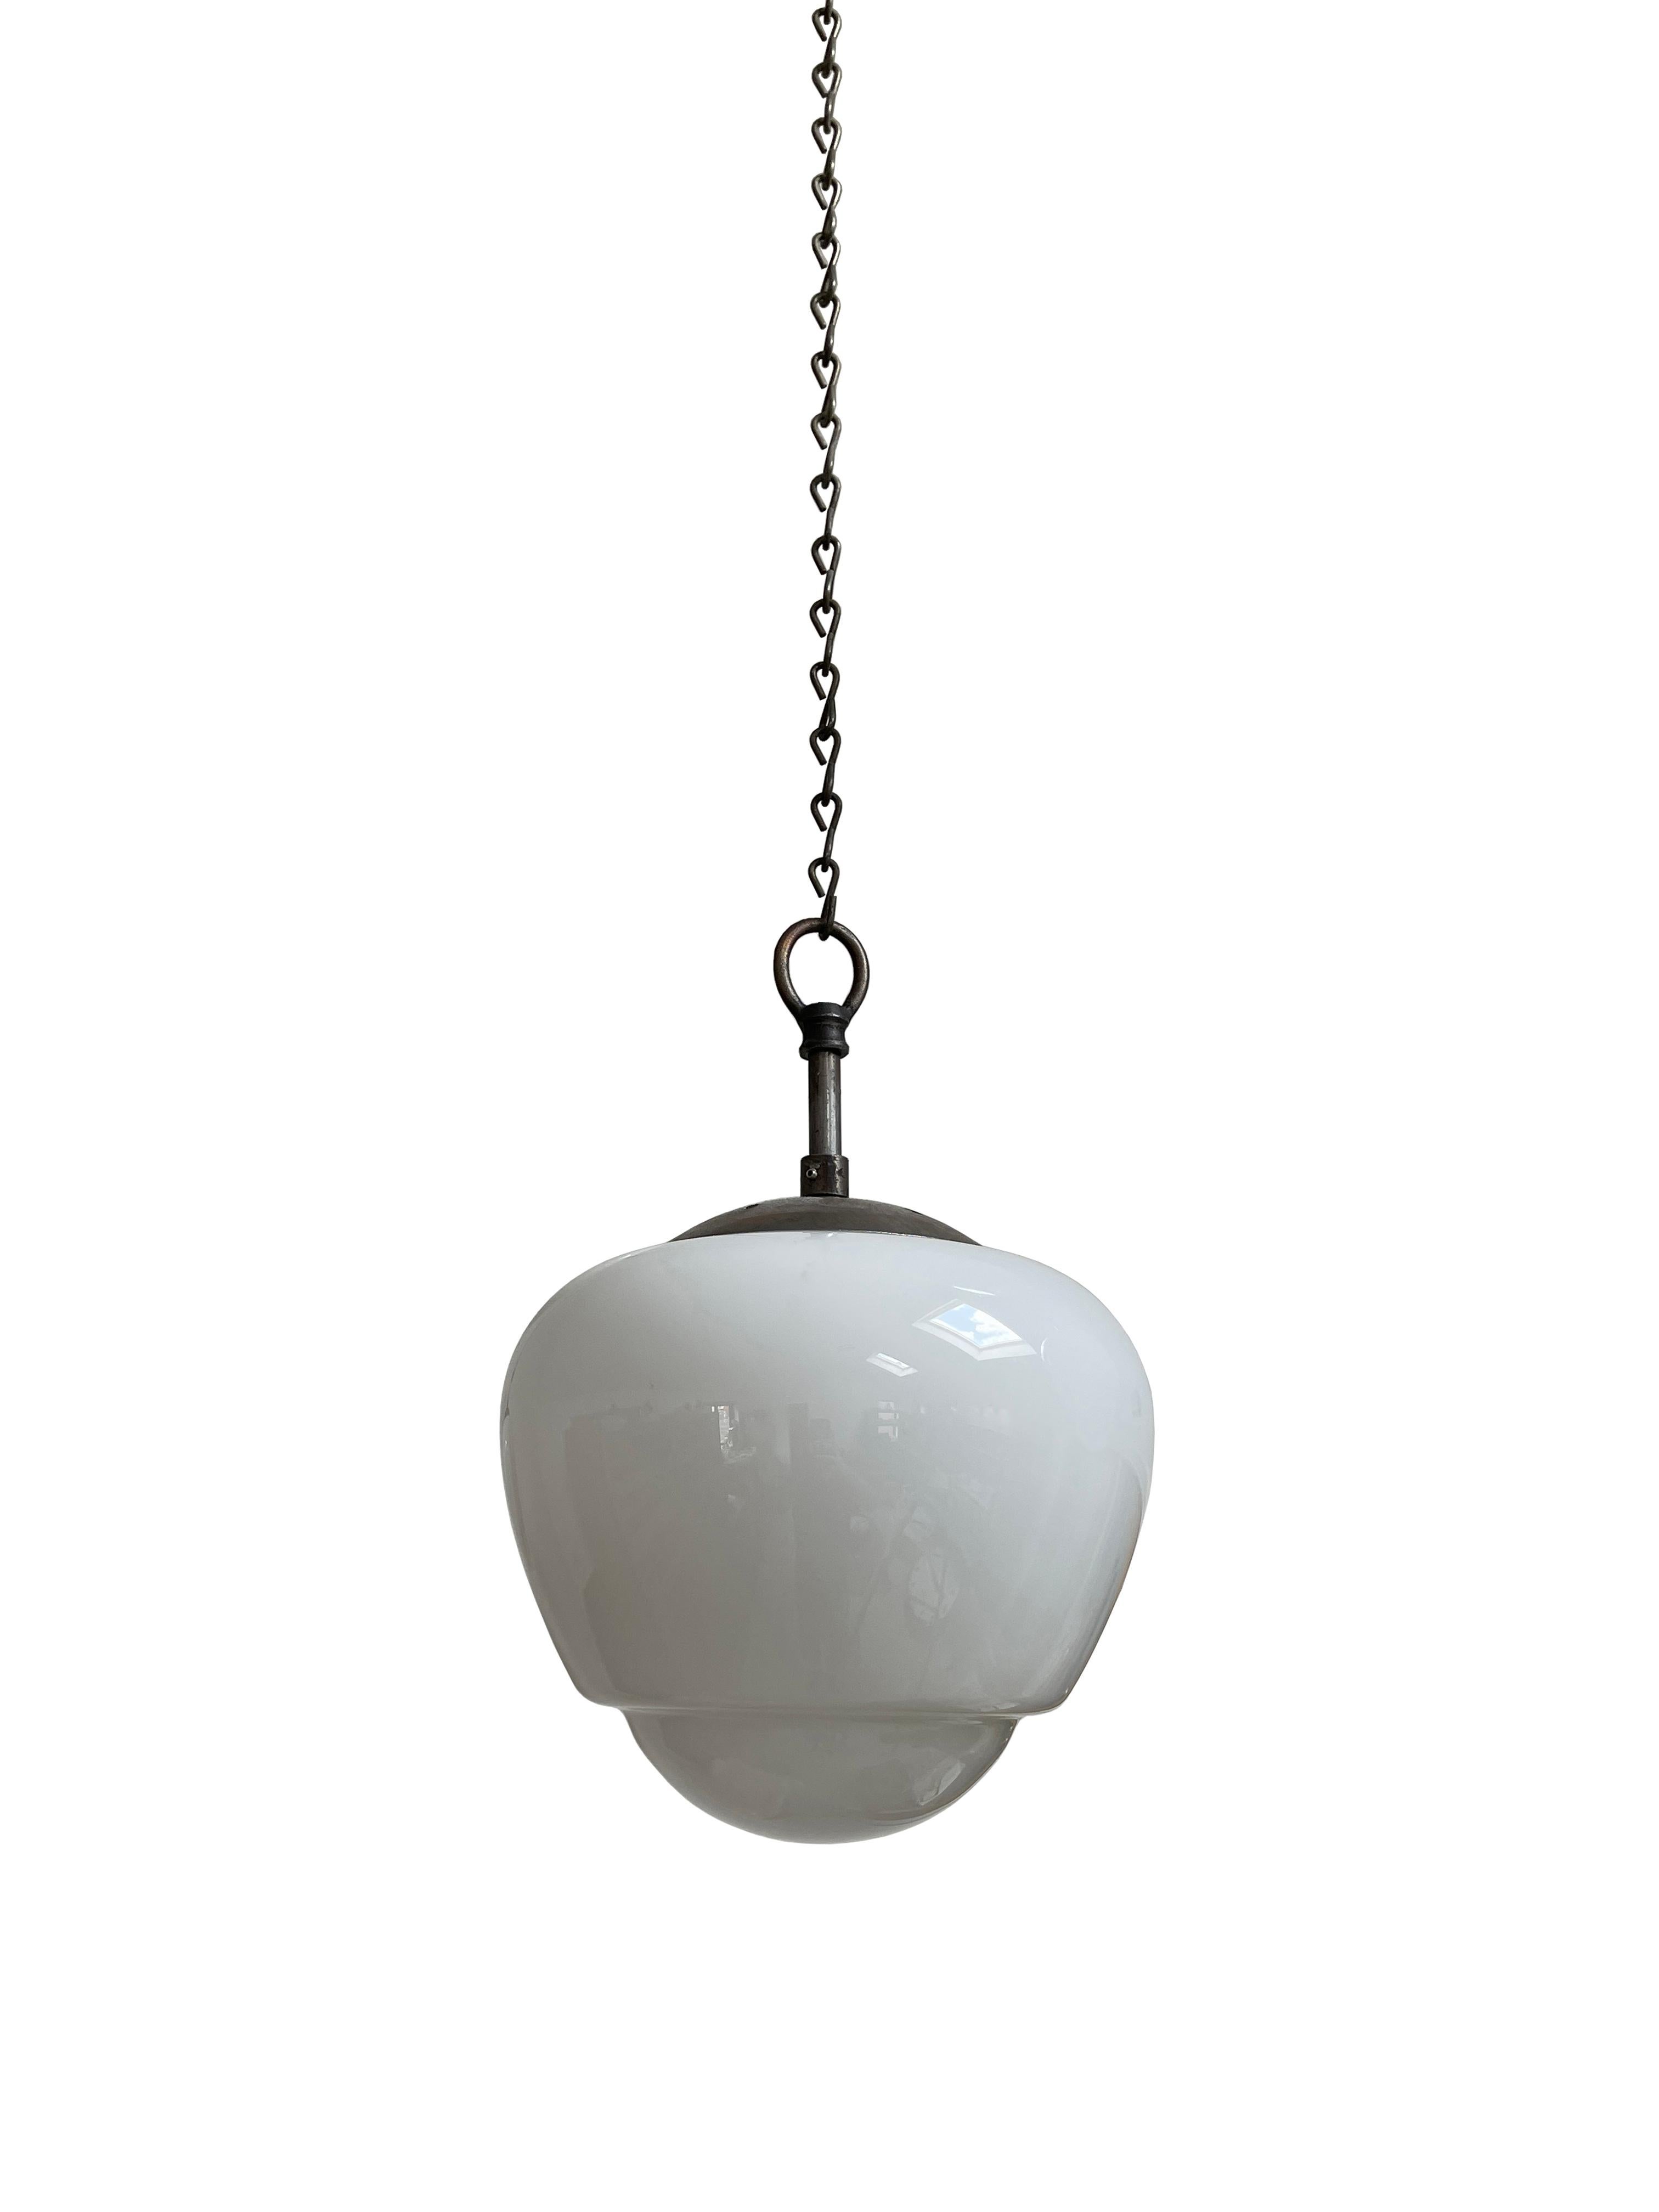 20th Century Set Antique Vintage Acorn Opaline White Milk Glass Ceiling Pendant Light Lamp For Sale